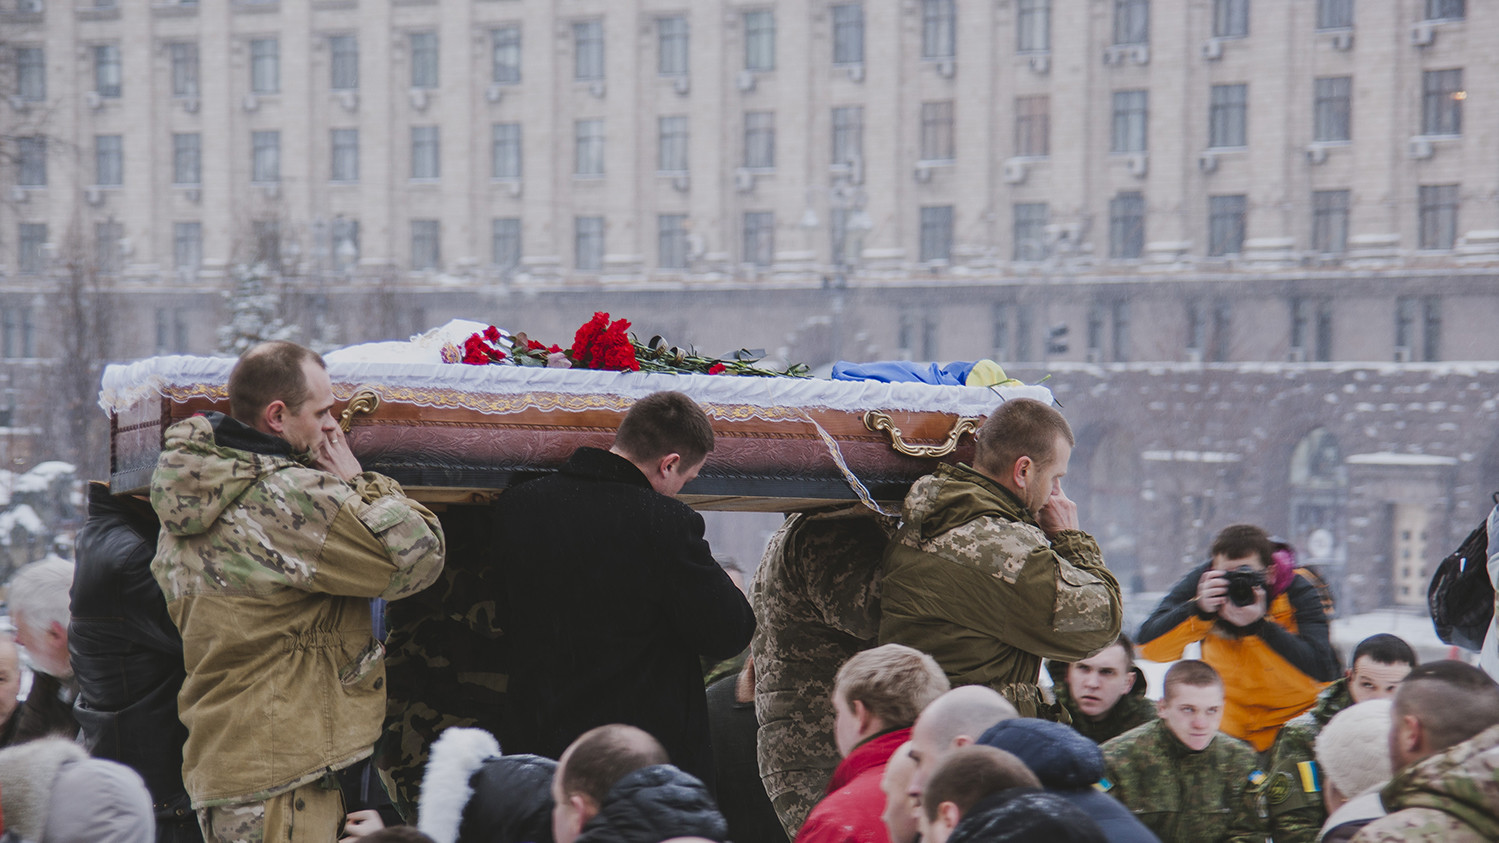 Ильницкого похоронят во Львовской облати